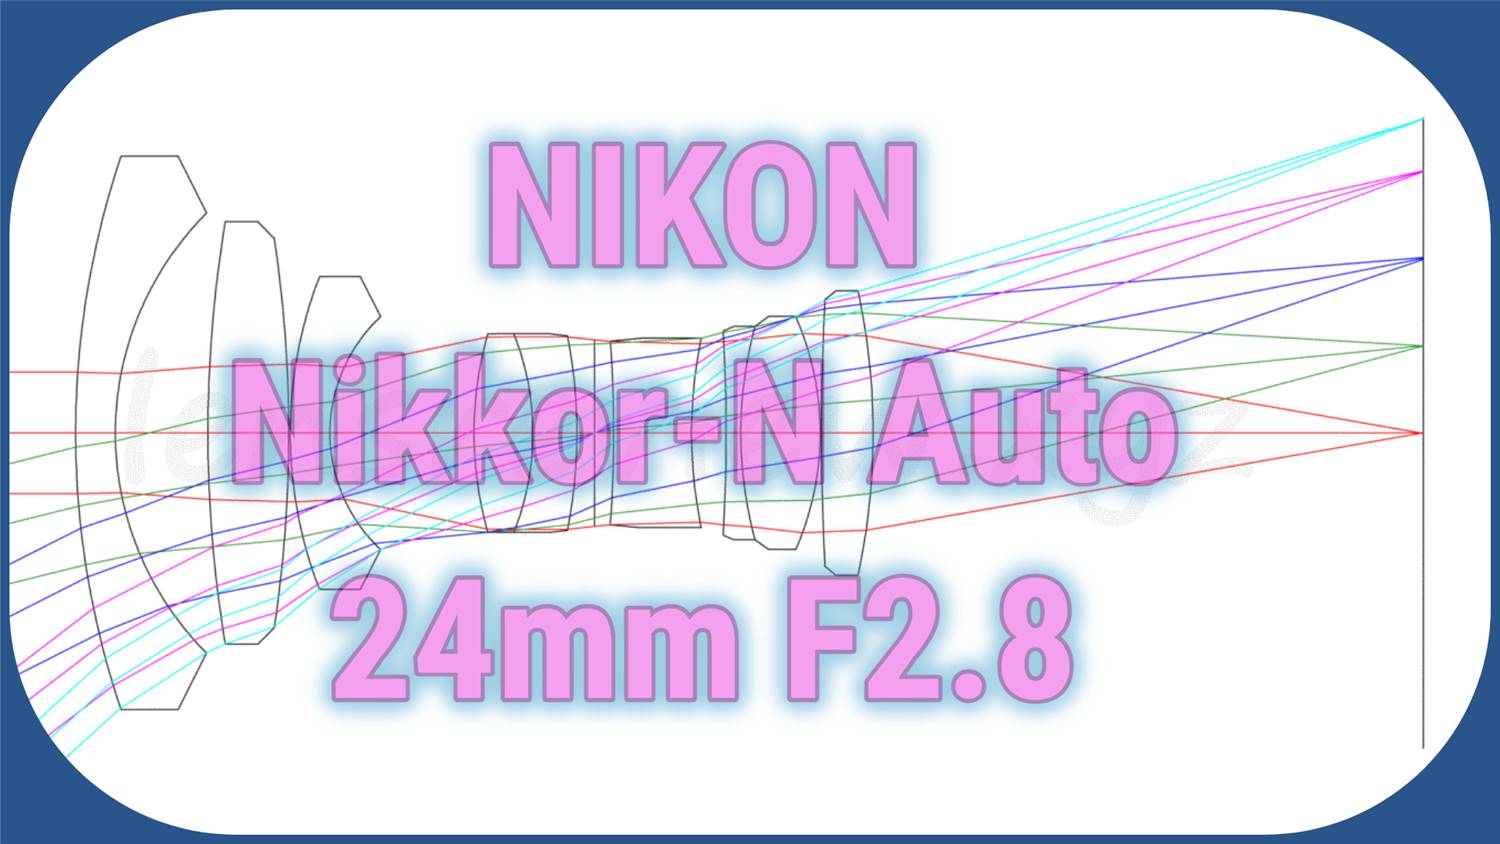 レンズのプロが解説】 ニコン広角レンズ NIKON Nikkor-N Auto 24mm F2 